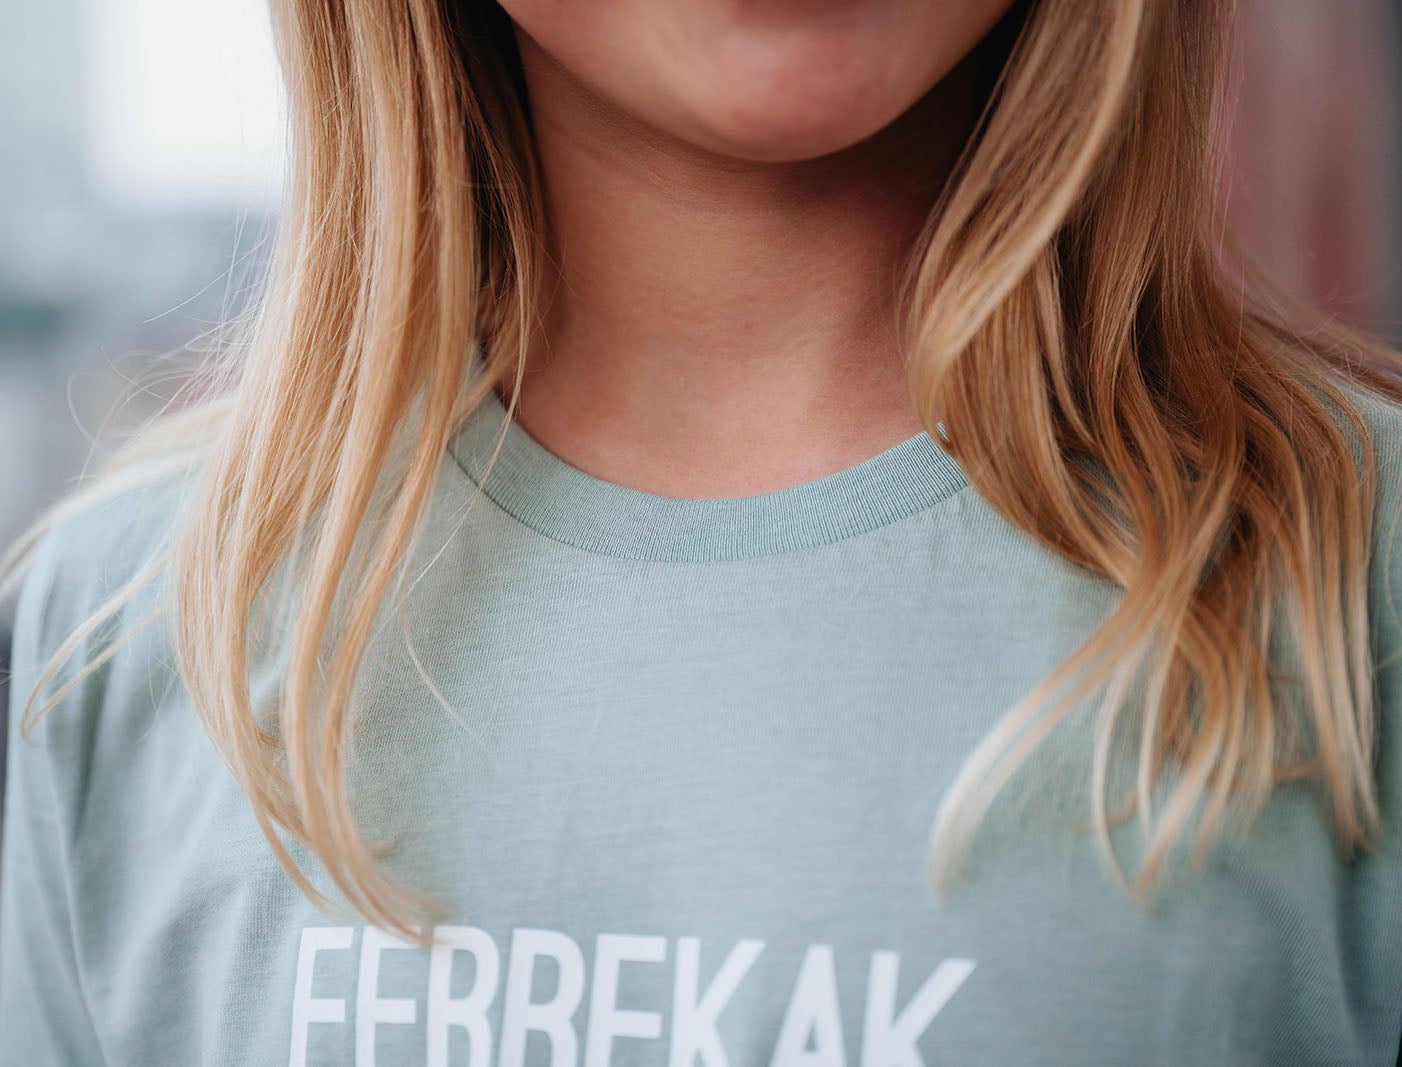 Meisje met een T-shirt met opdruk FEBBEKAK.